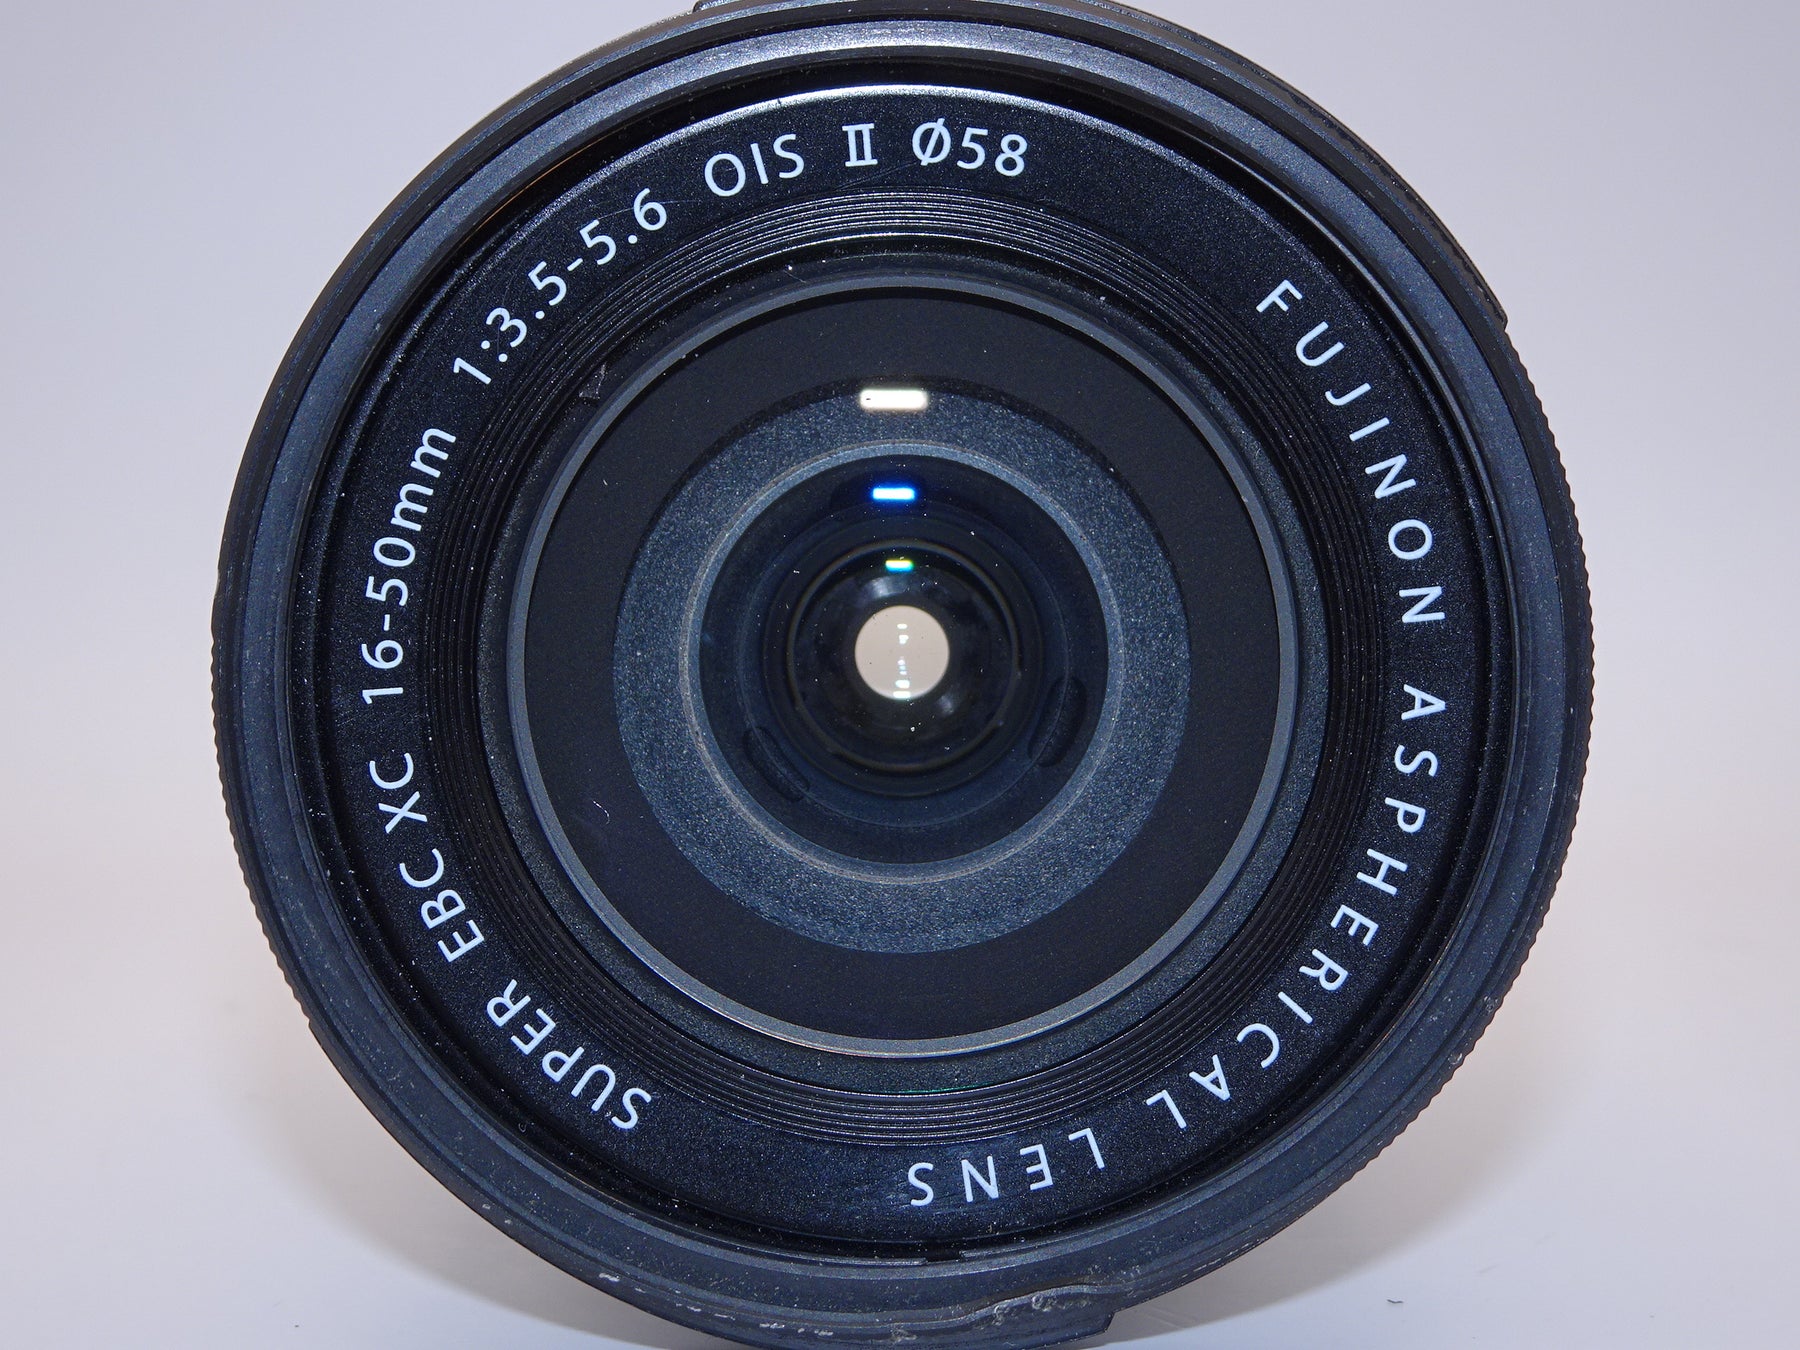 FUJIFILM 標準ズームレンズ XC16-50mmF3.5-5.6 OIS II S シルバー